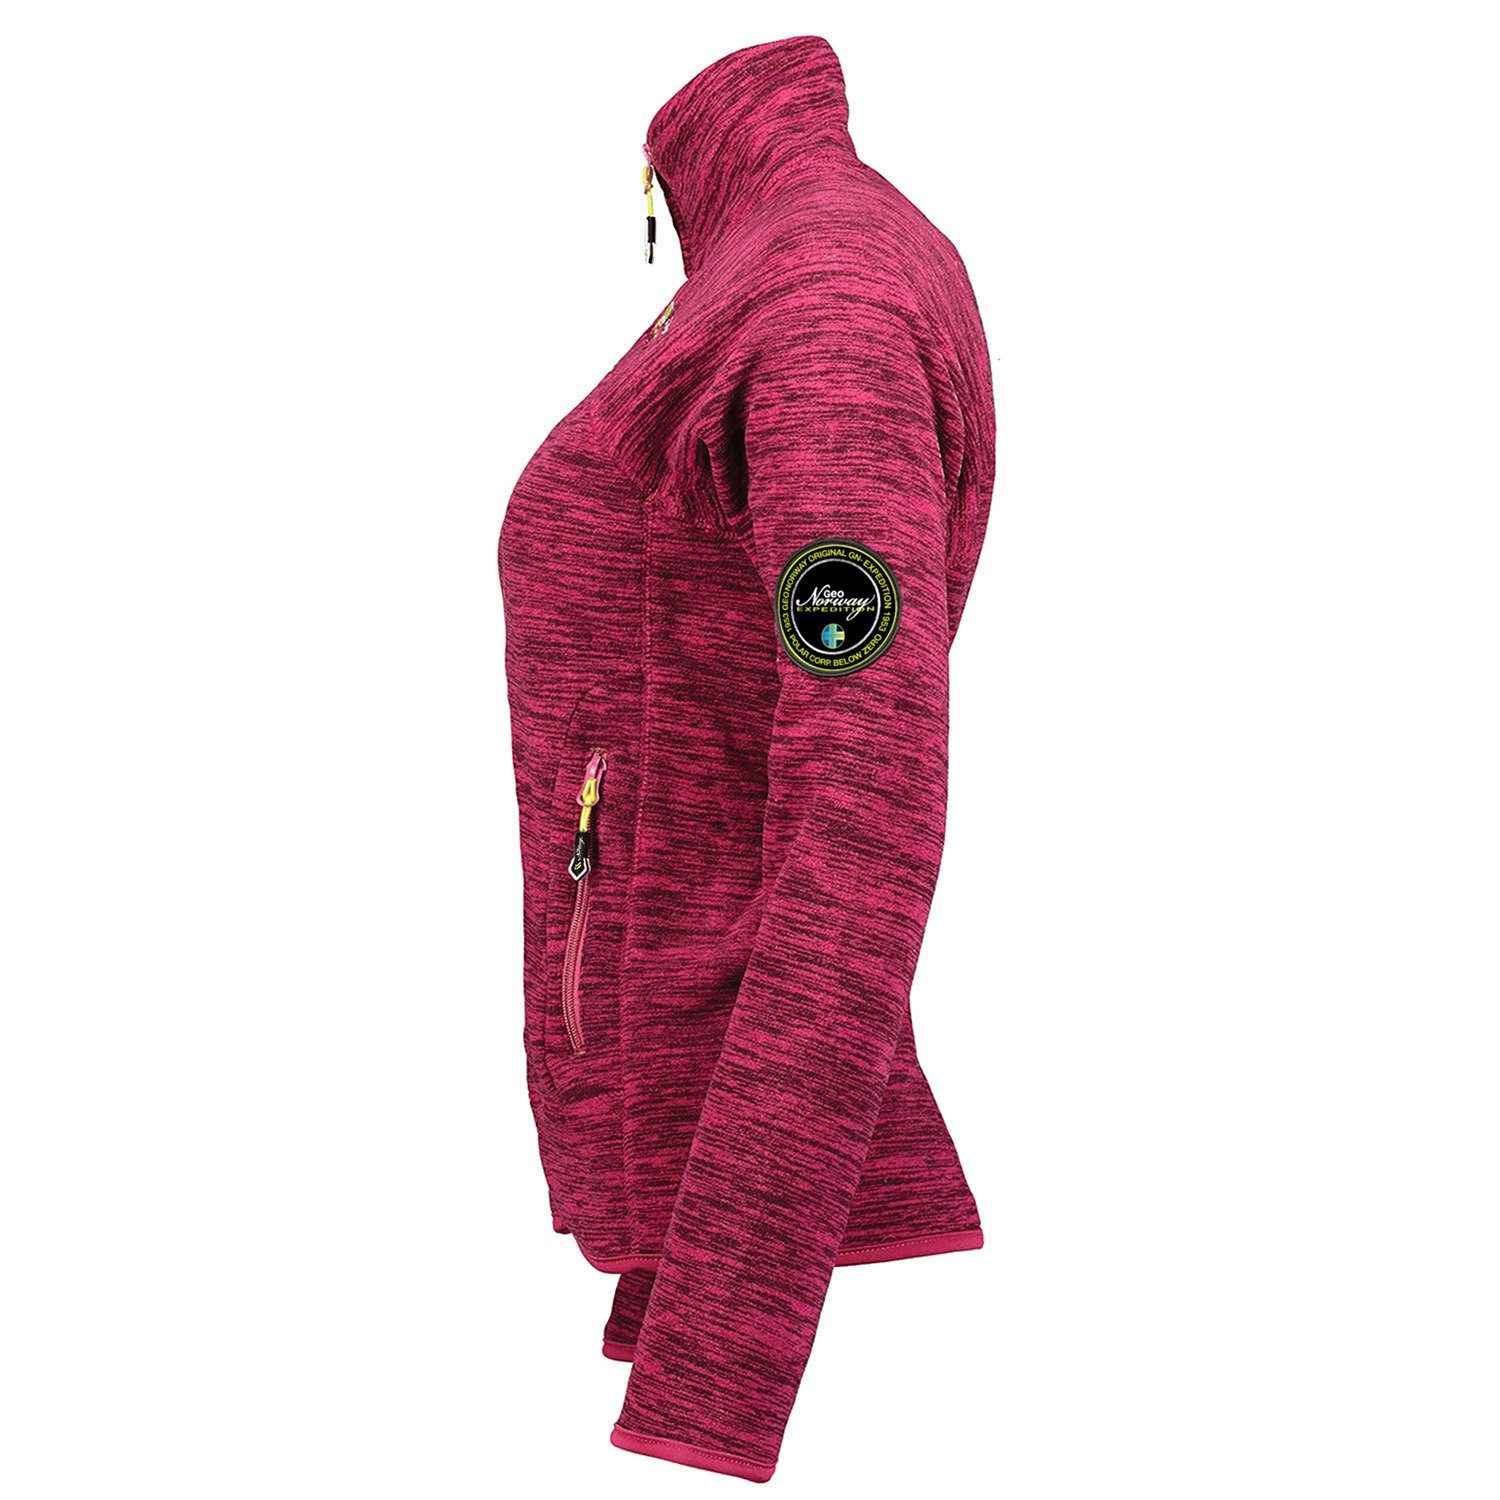 G-TARELLA zu Norway - Geographical warm leicht und Damen Pink tragen, Fleecejacke flauschig